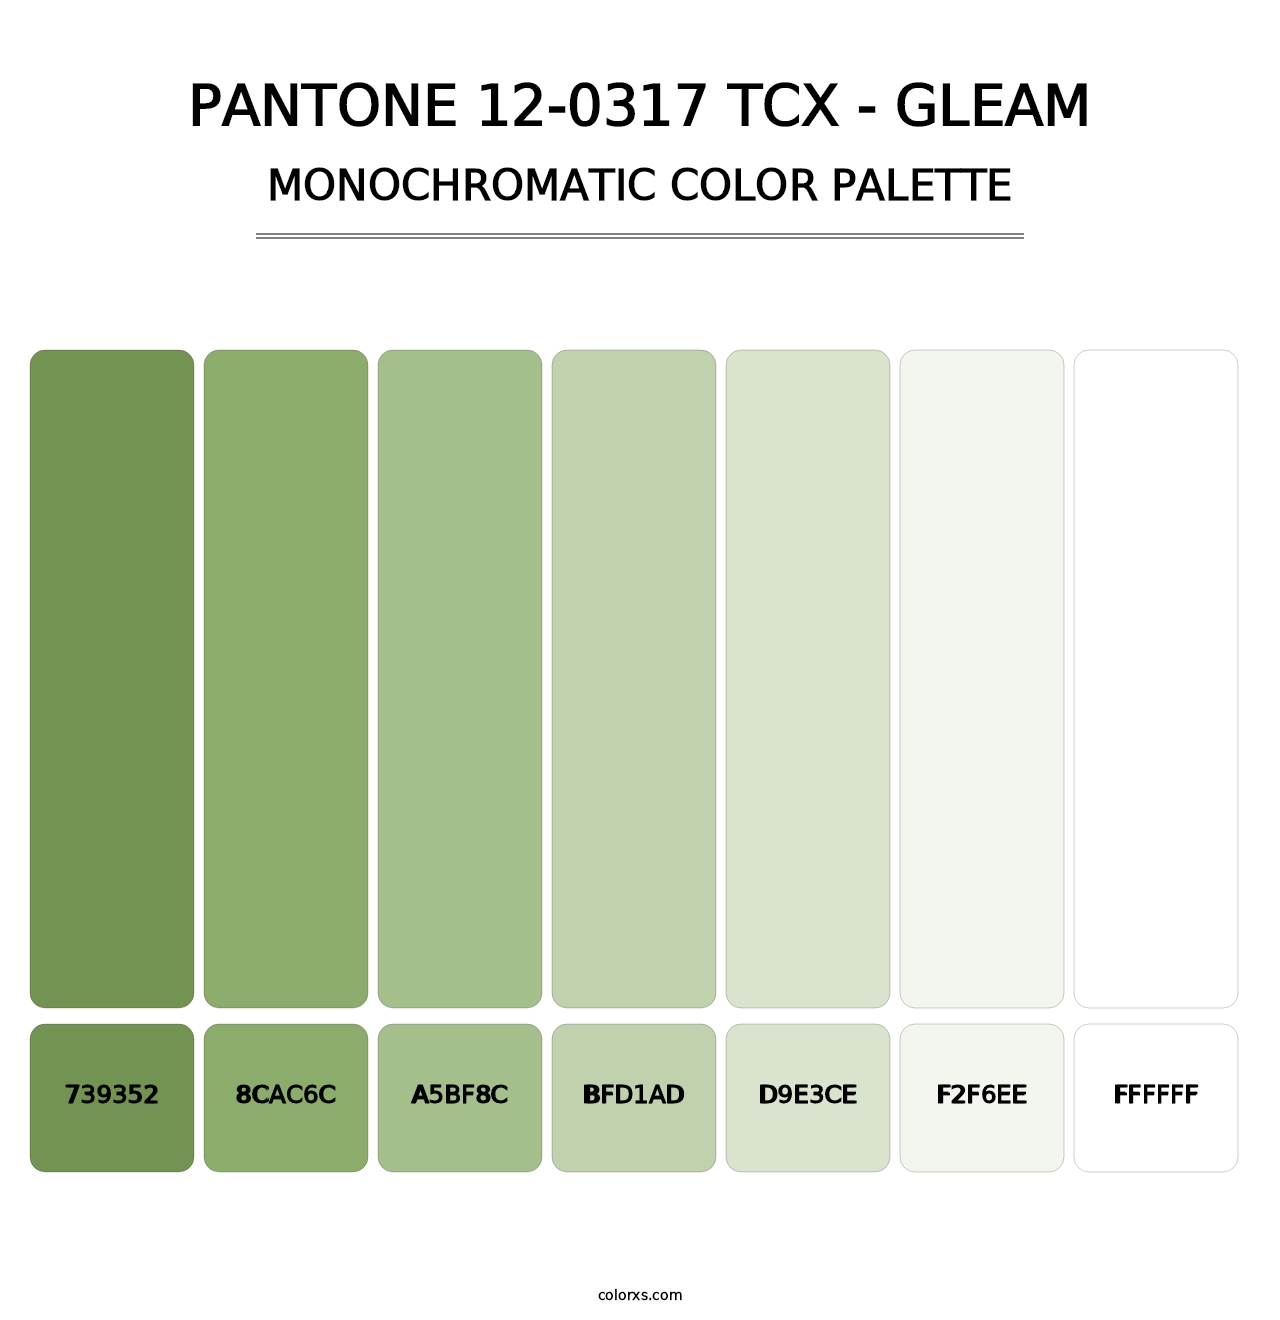 PANTONE 12-0317 TCX - Gleam - Monochromatic Color Palette